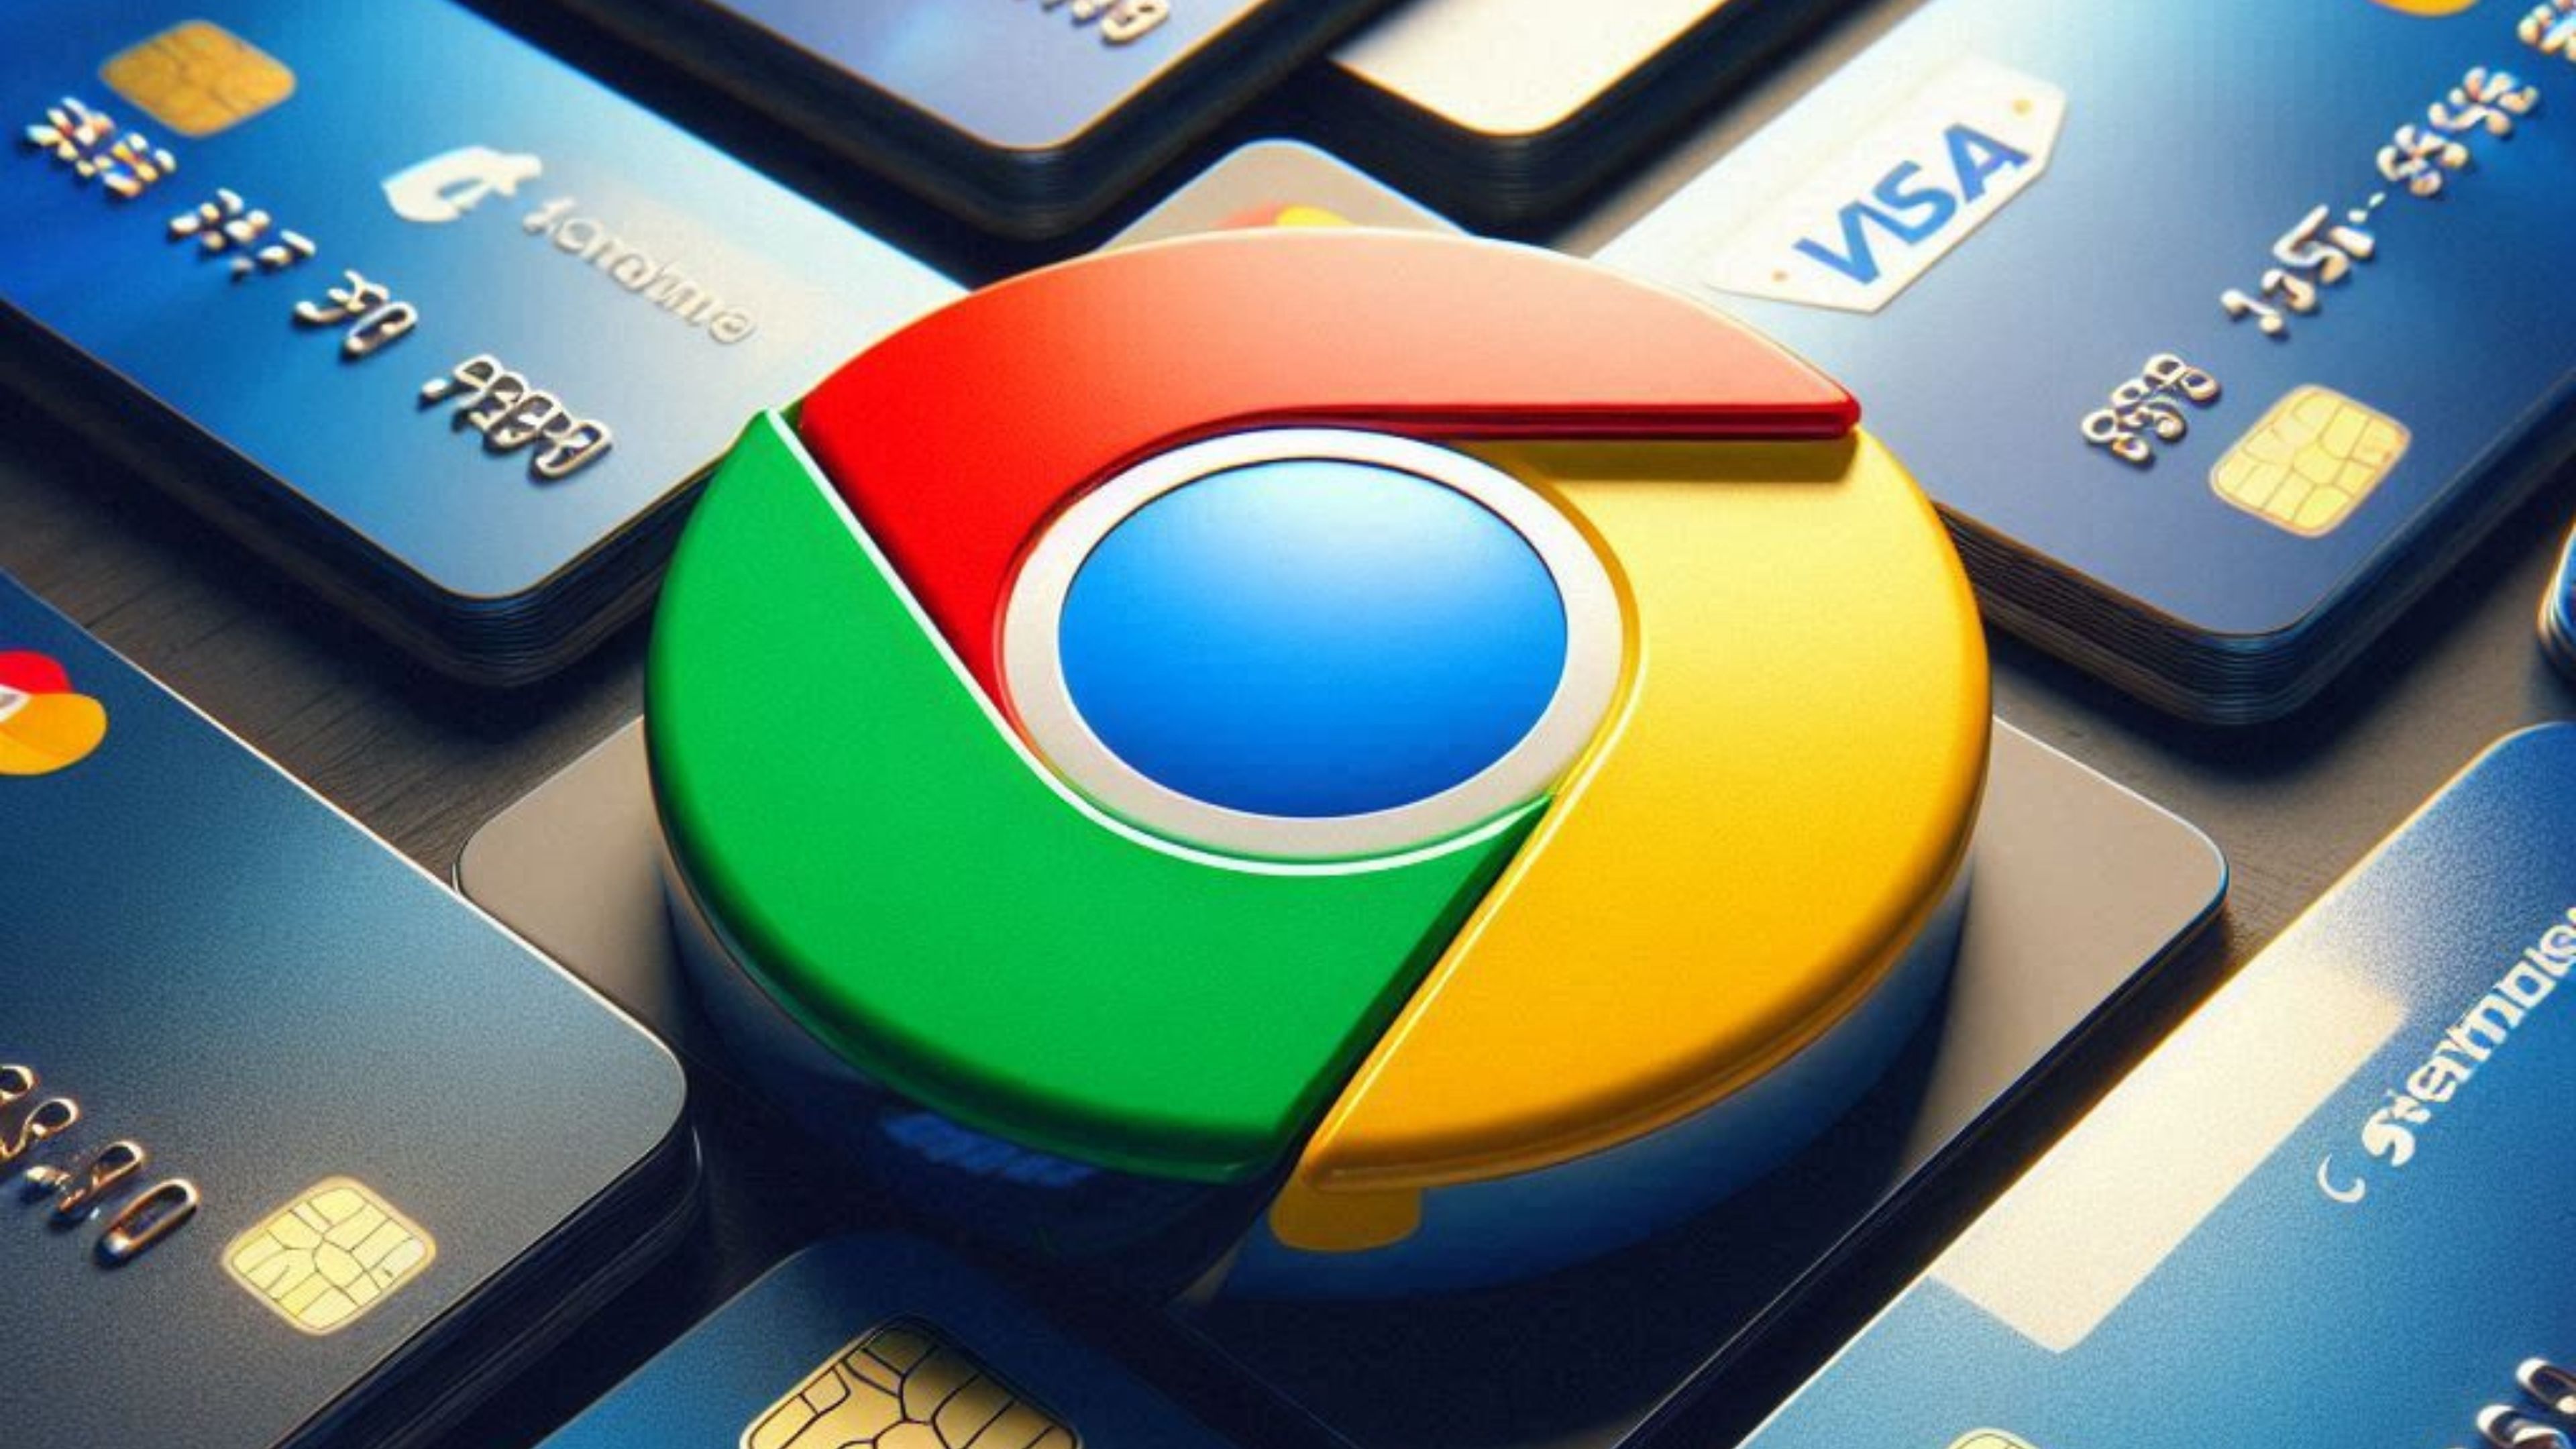 Cómo añadir, modificar o eliminar métodos de pago en Chrome para PC y móviles